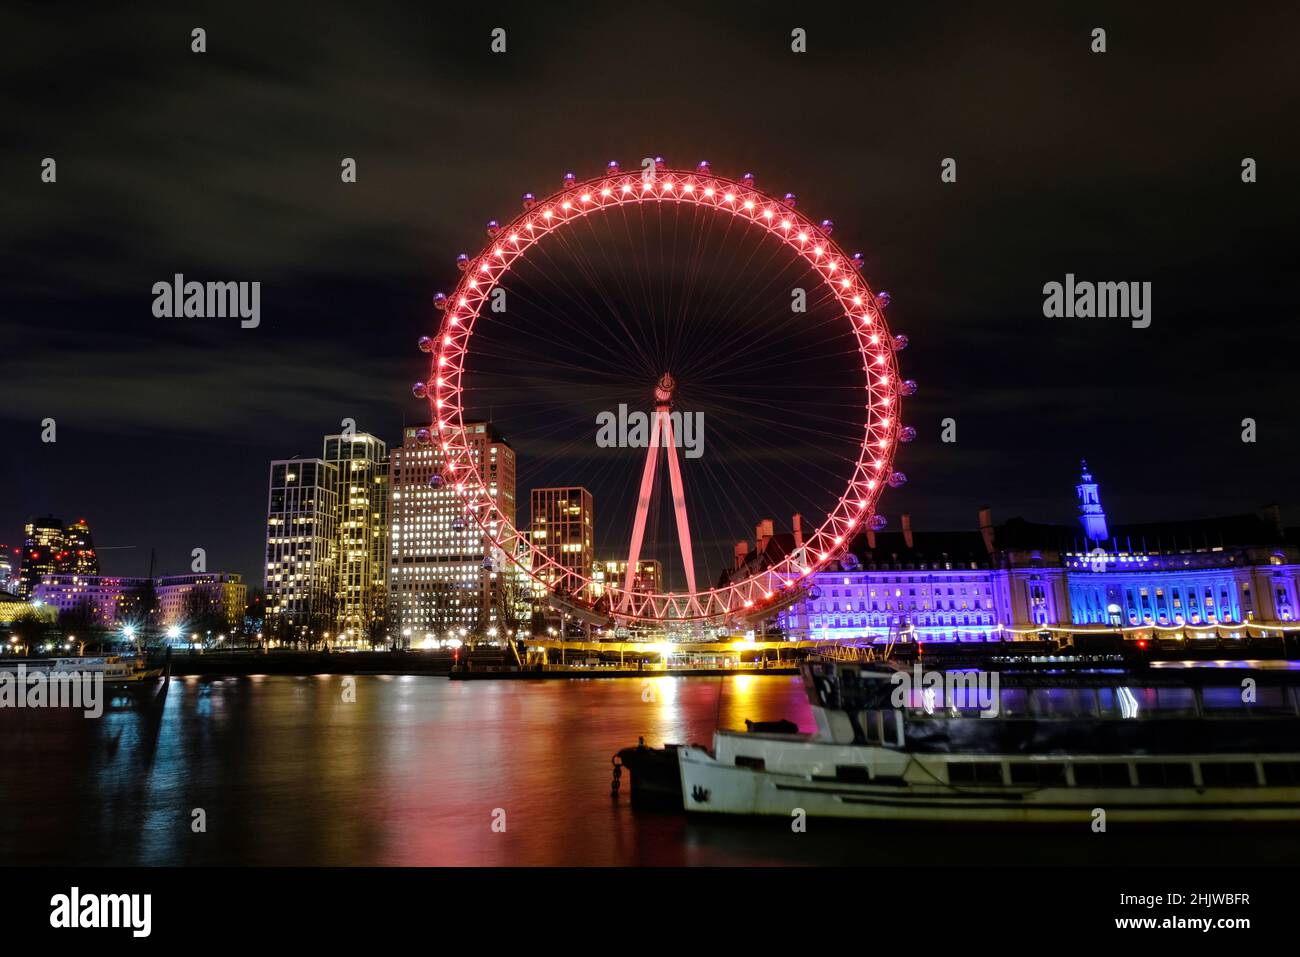 Londres, Royaume-Uni, 31st janvier 2022.Le London Eye, vu de la Tamise, est illuminé en rouge pour célébrer le nouvel an lunaire - ou le nouvel an chinois qui tombe le 1st février.Crédit : onzième heure Photographie/Alamy Live News Banque D'Images